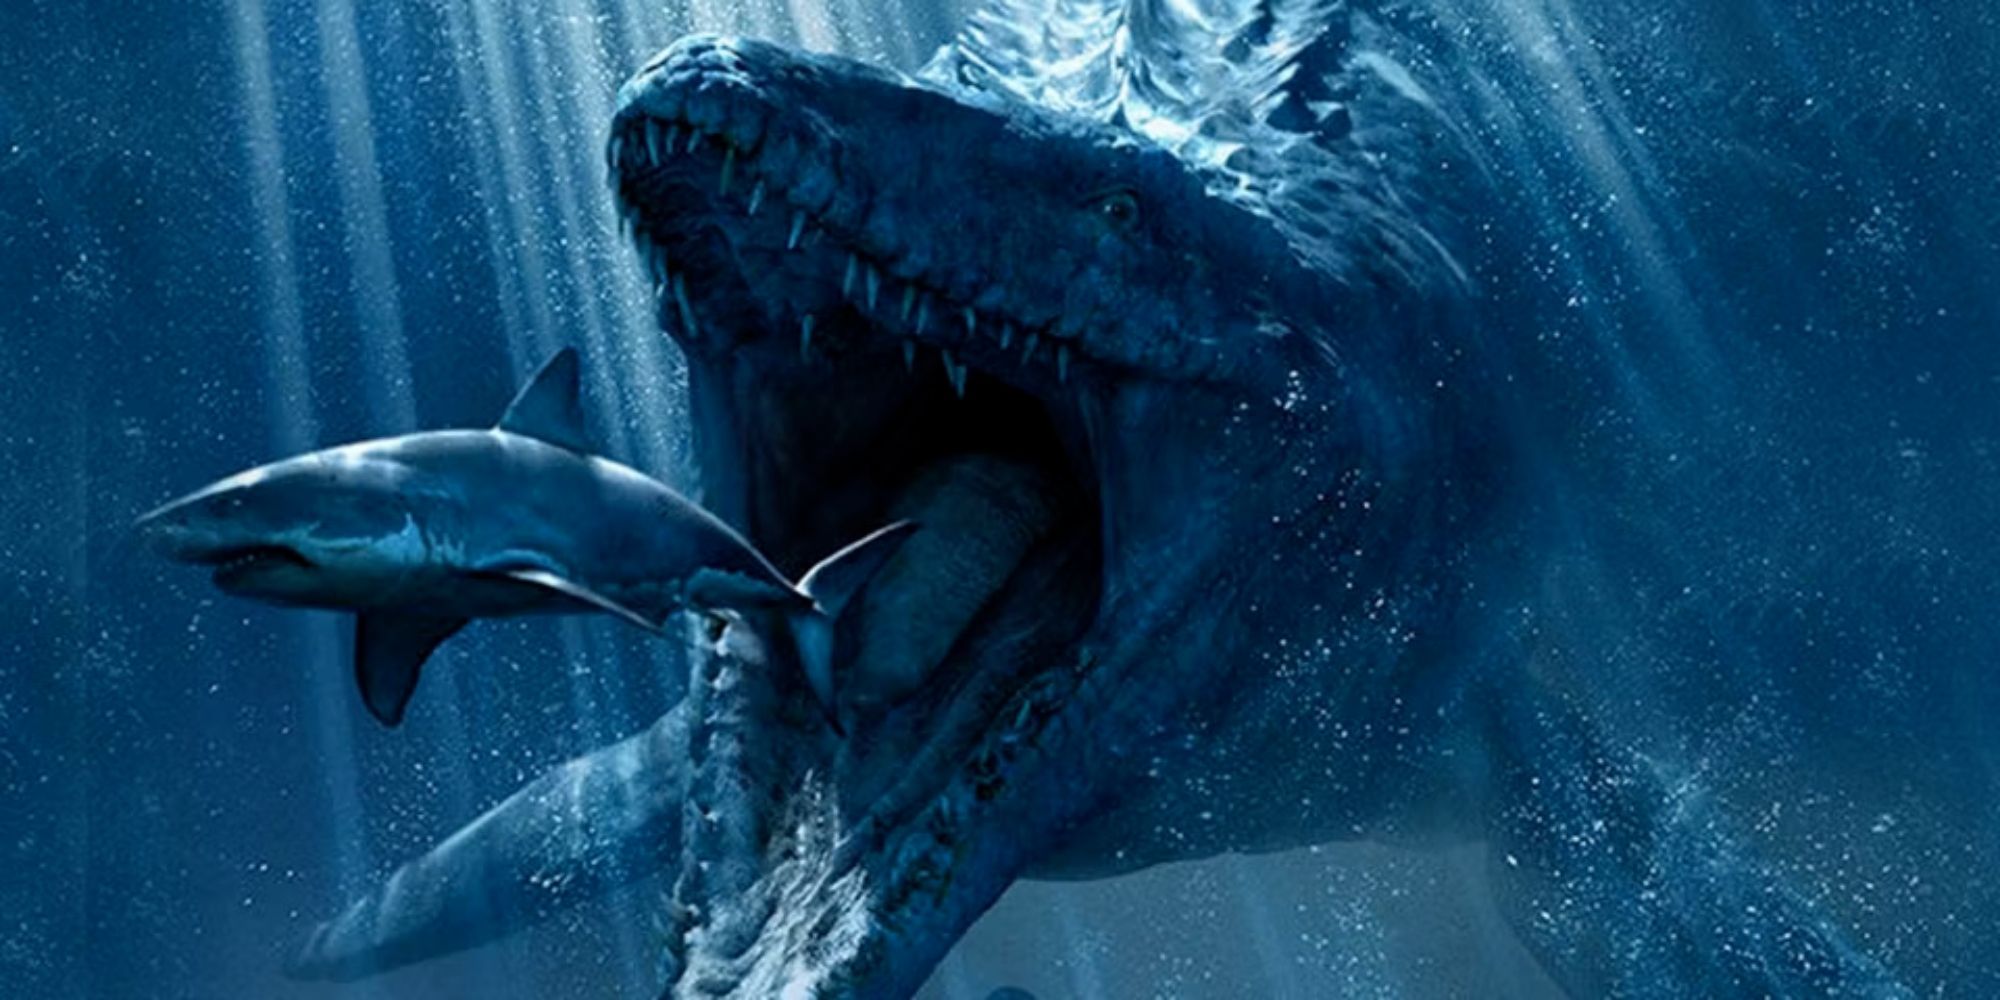 The Mosasaurus eating a shark.